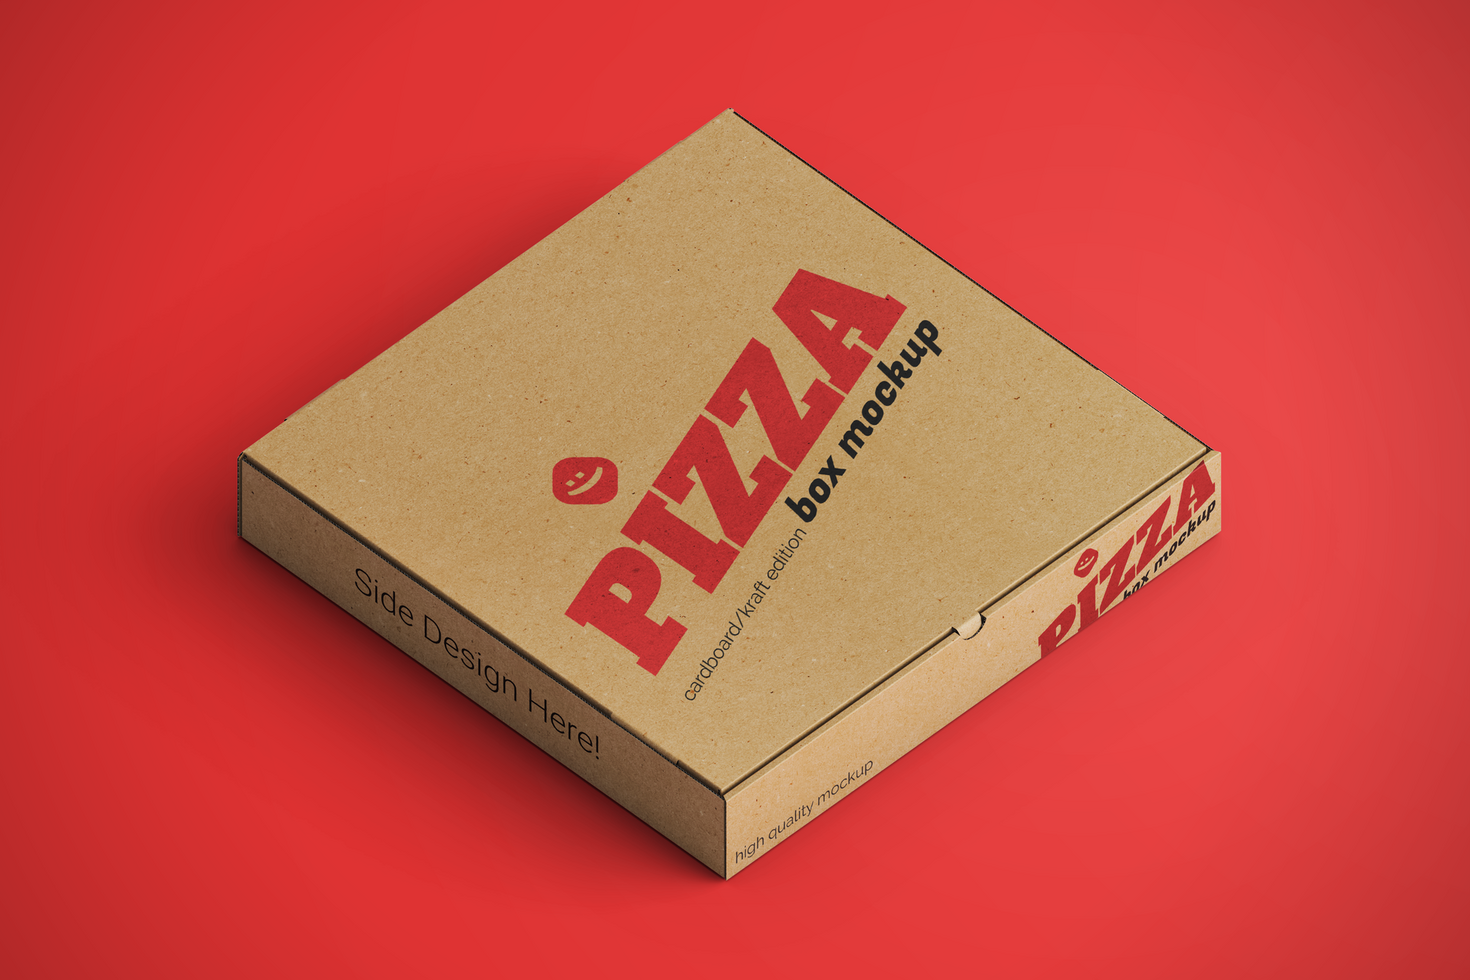 Öko freundlich Verpackung geschlossen Pizza Essen Lieferung Karton Kraft Papier Platz Box Verpackung realistisch psd Attrappe, Lehrmodell, Simulation